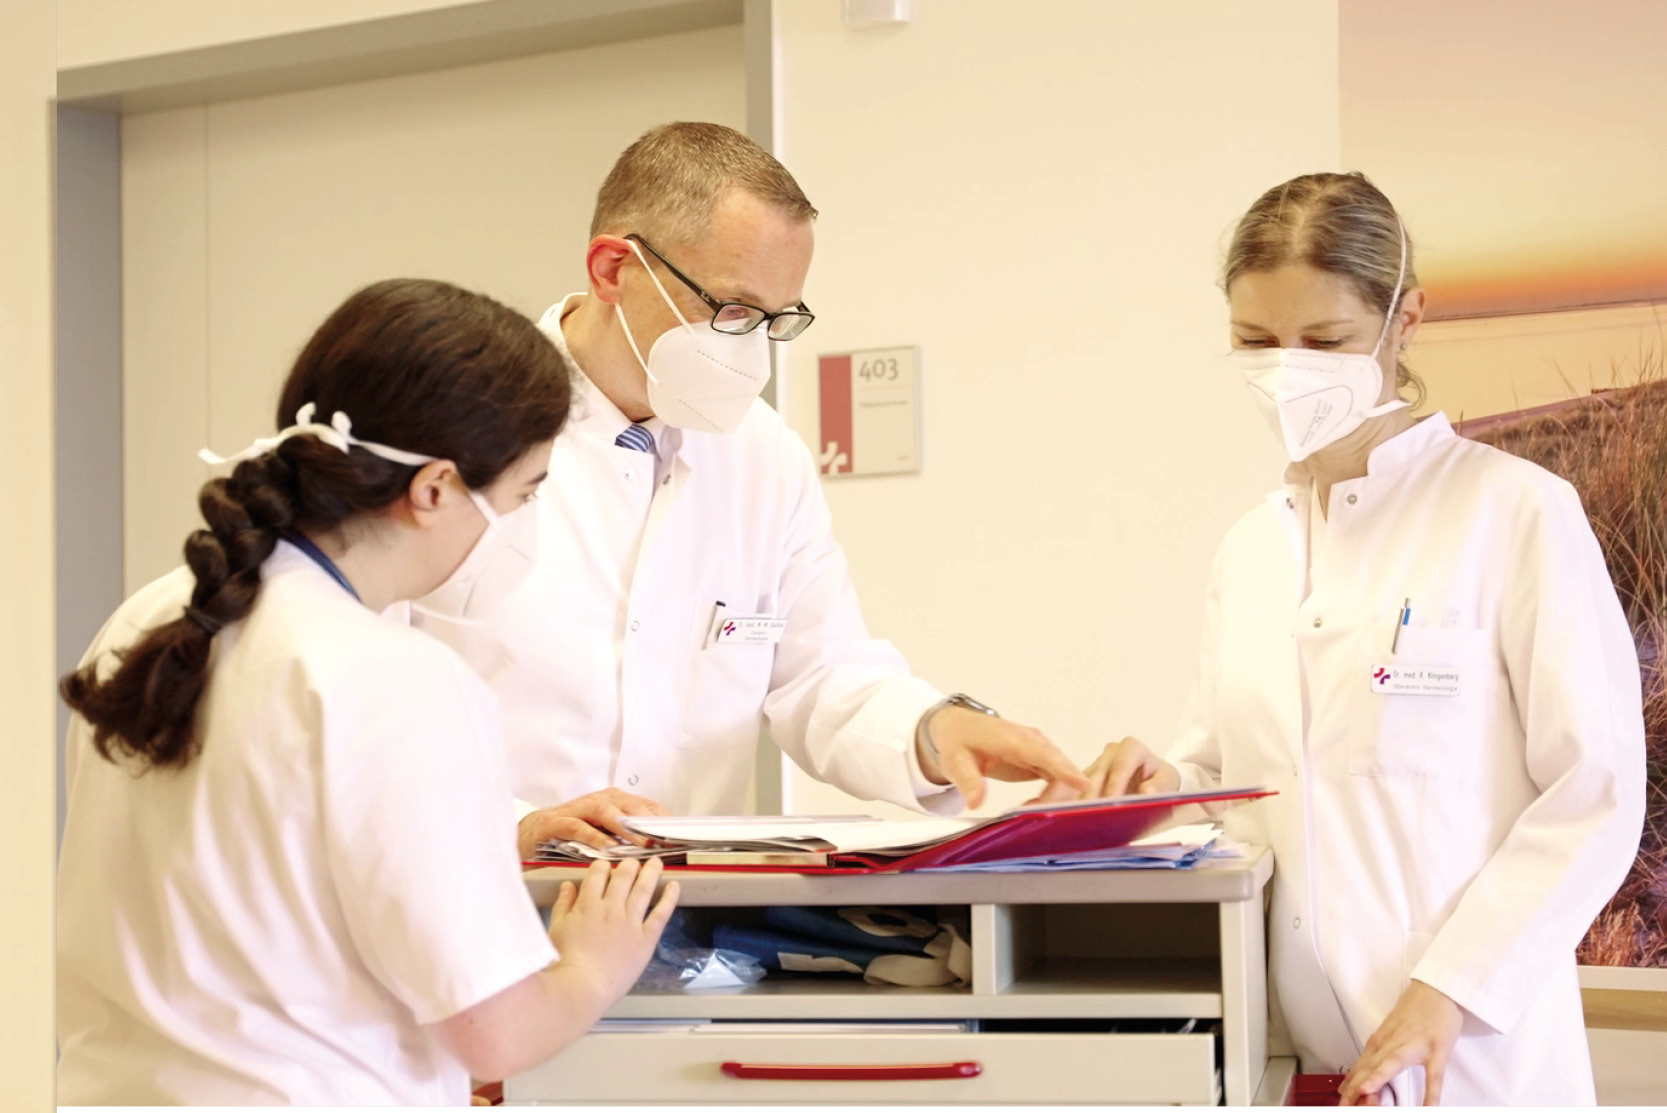 Chefarzt Dr. Sachse und zwei Mitarbeiterinnen des Hautkrebszentrums beim gemeinsamen Studium einer Patientenakte